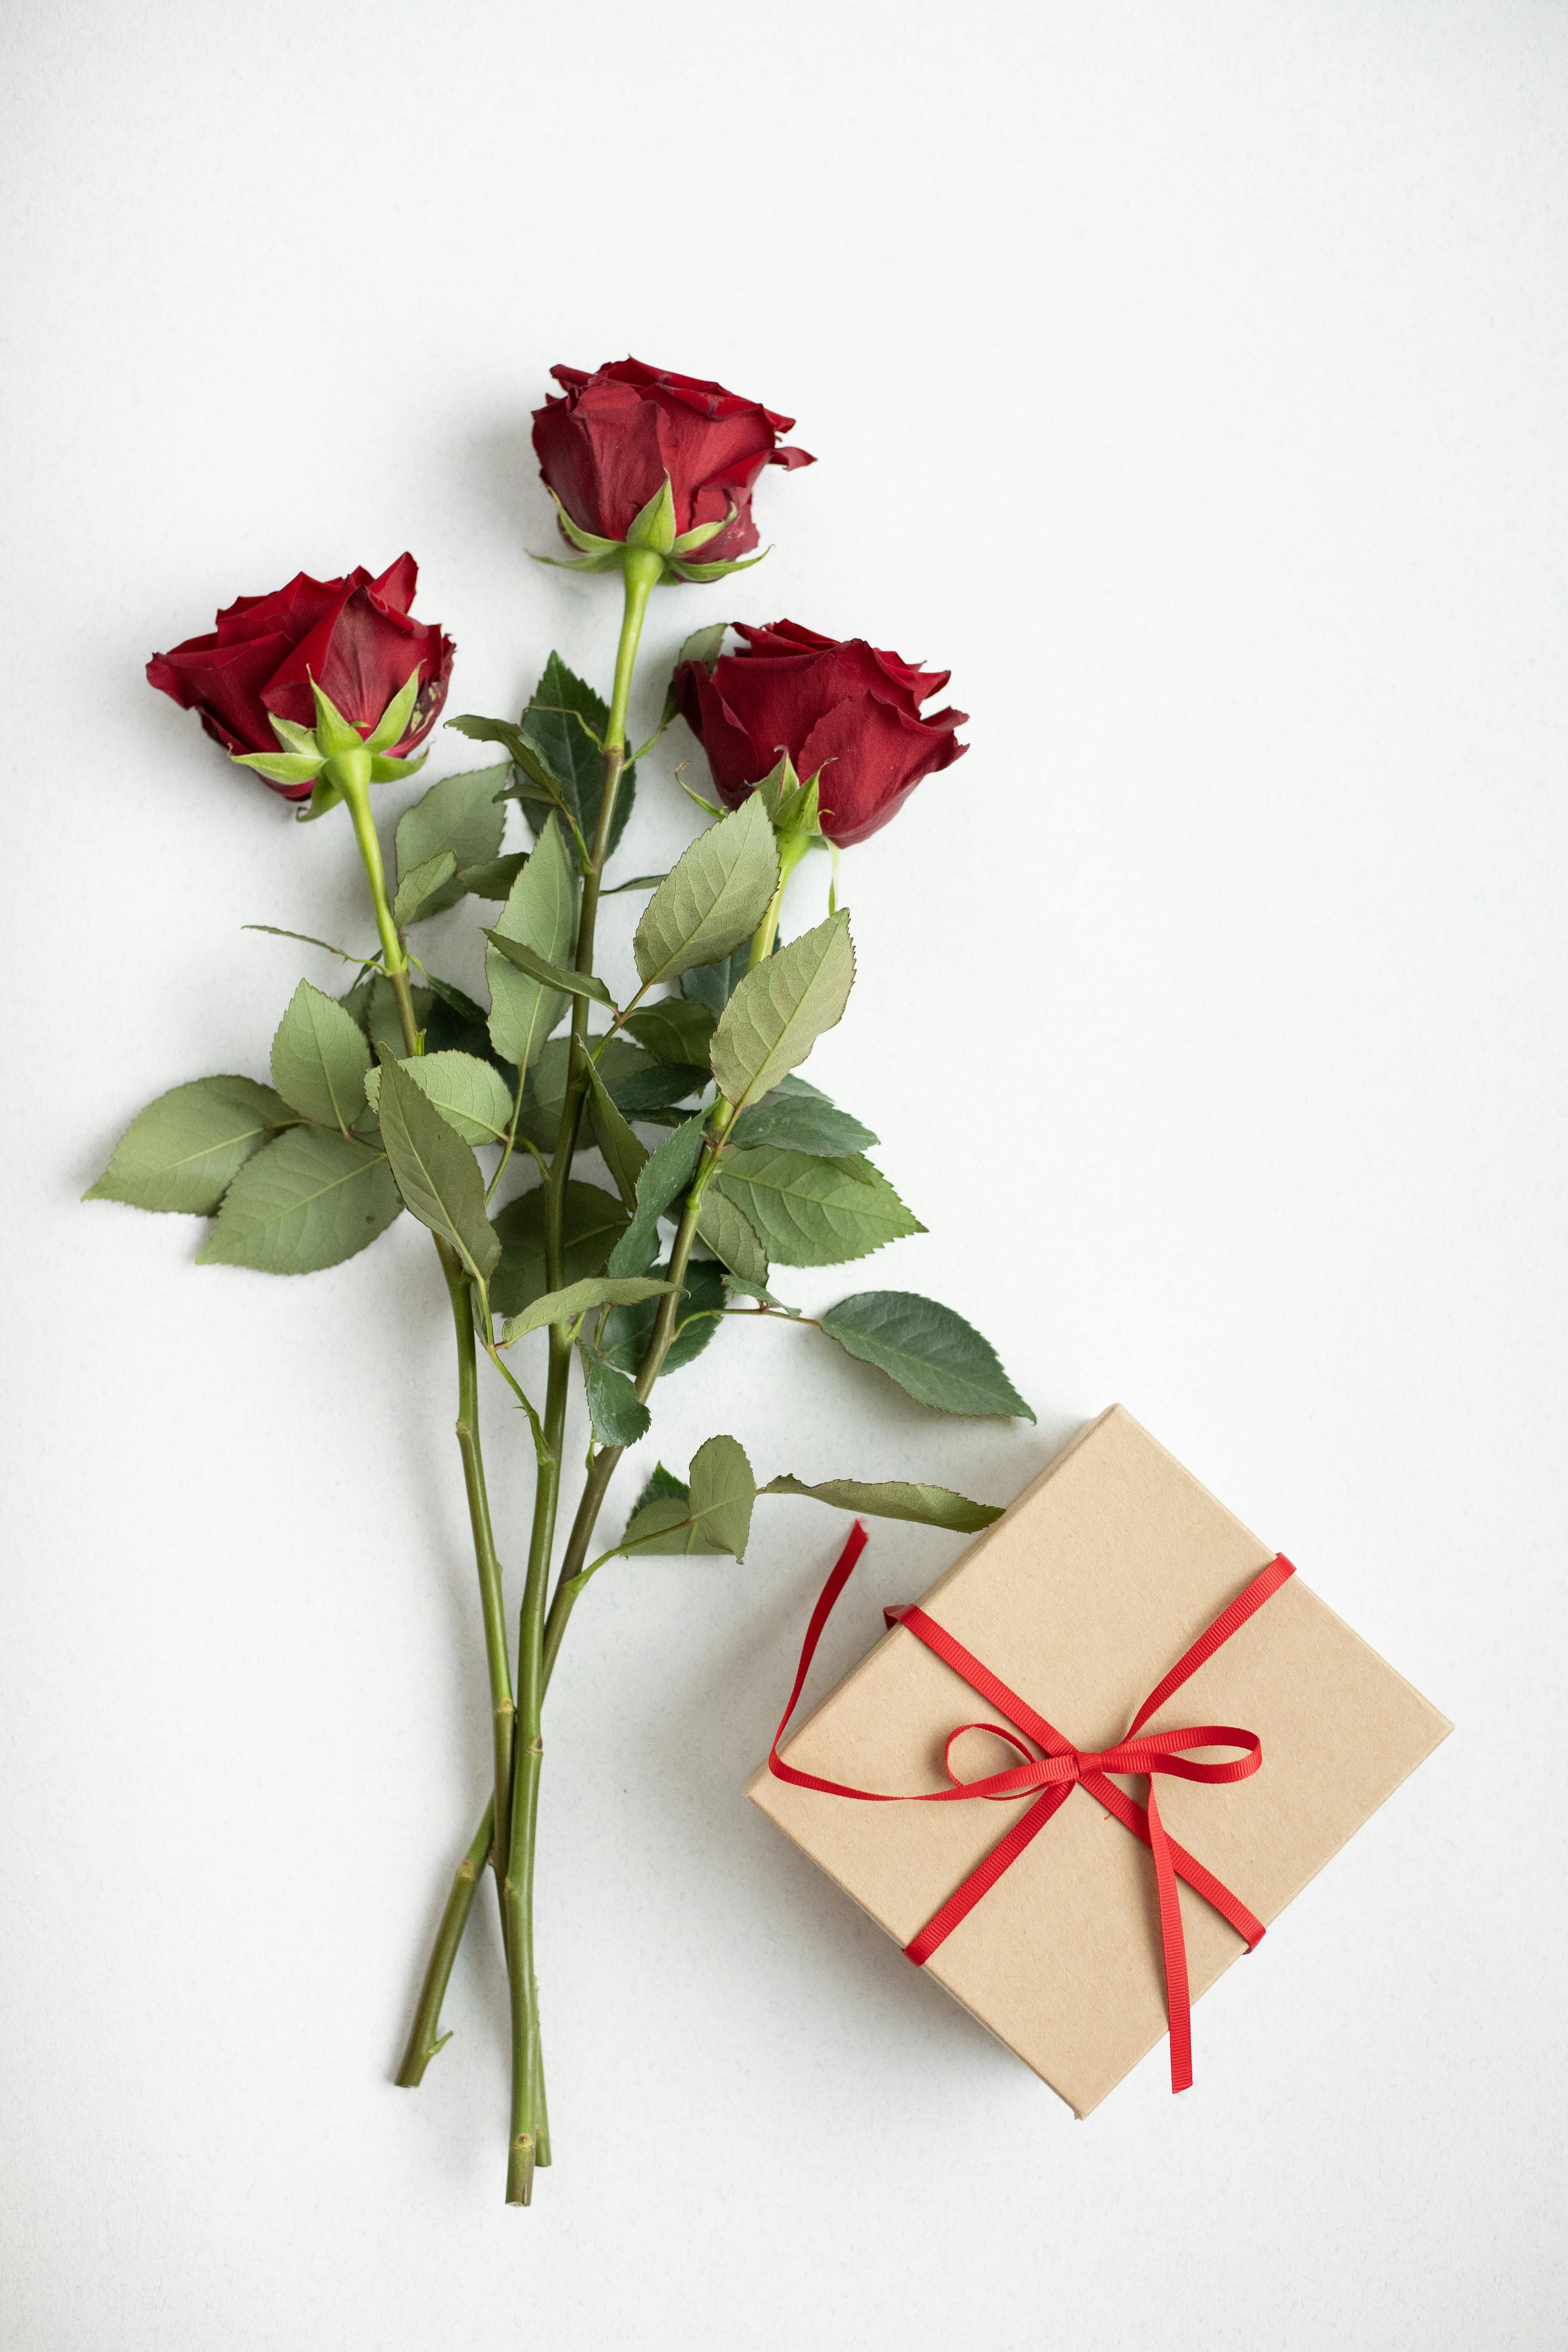 Un paquet cadeau et quelques roses | Source : Pexels